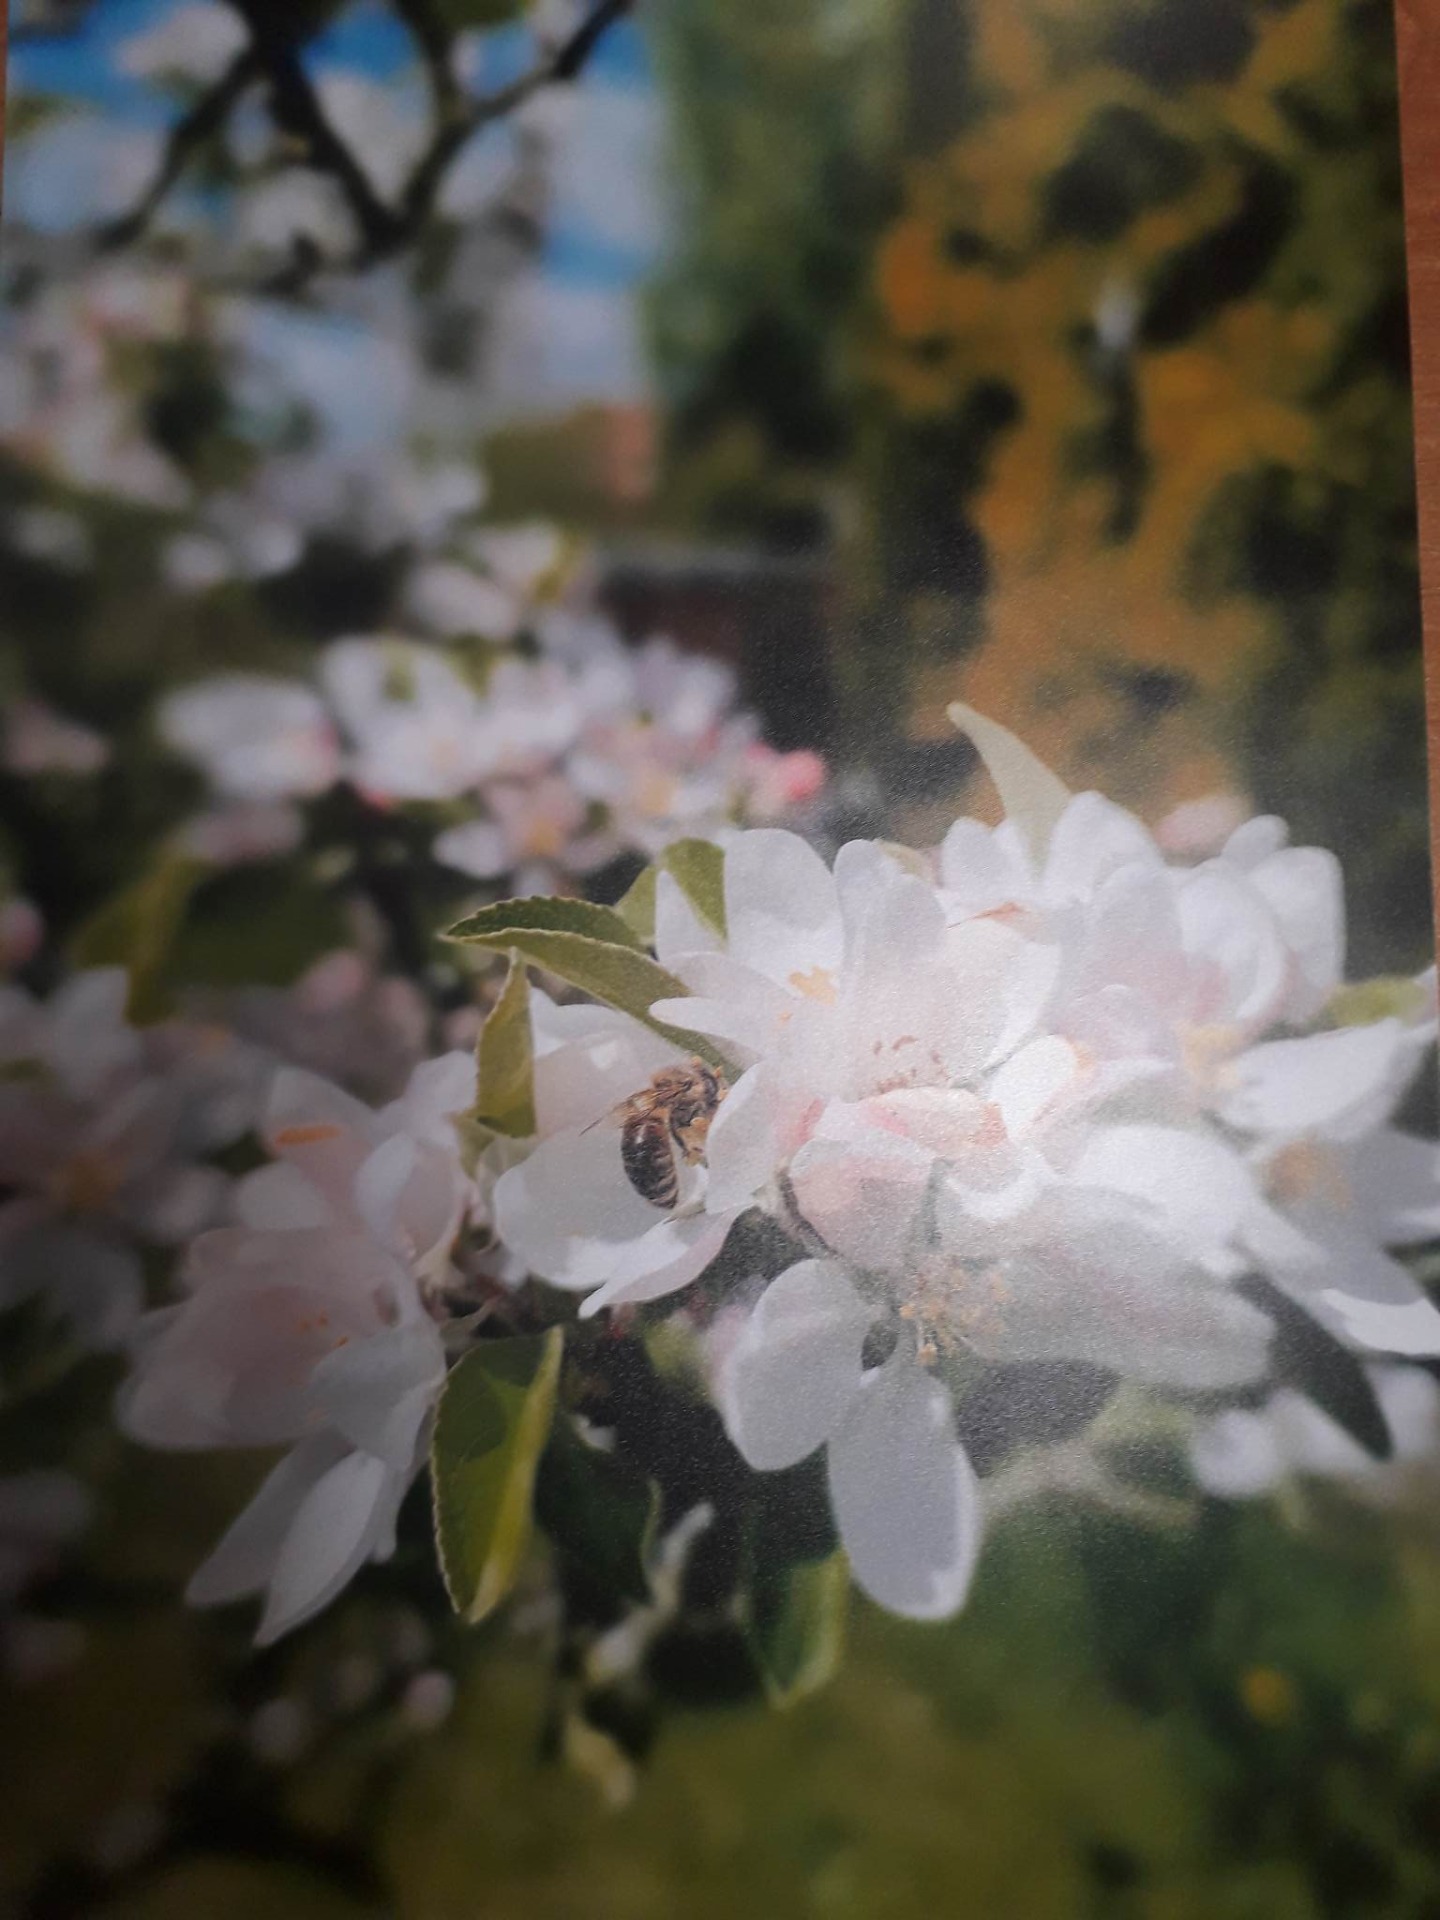 Pszczoła Na kwiatach jabłoni . 
Autorka Marcelina Swandzikowska kl. 2c